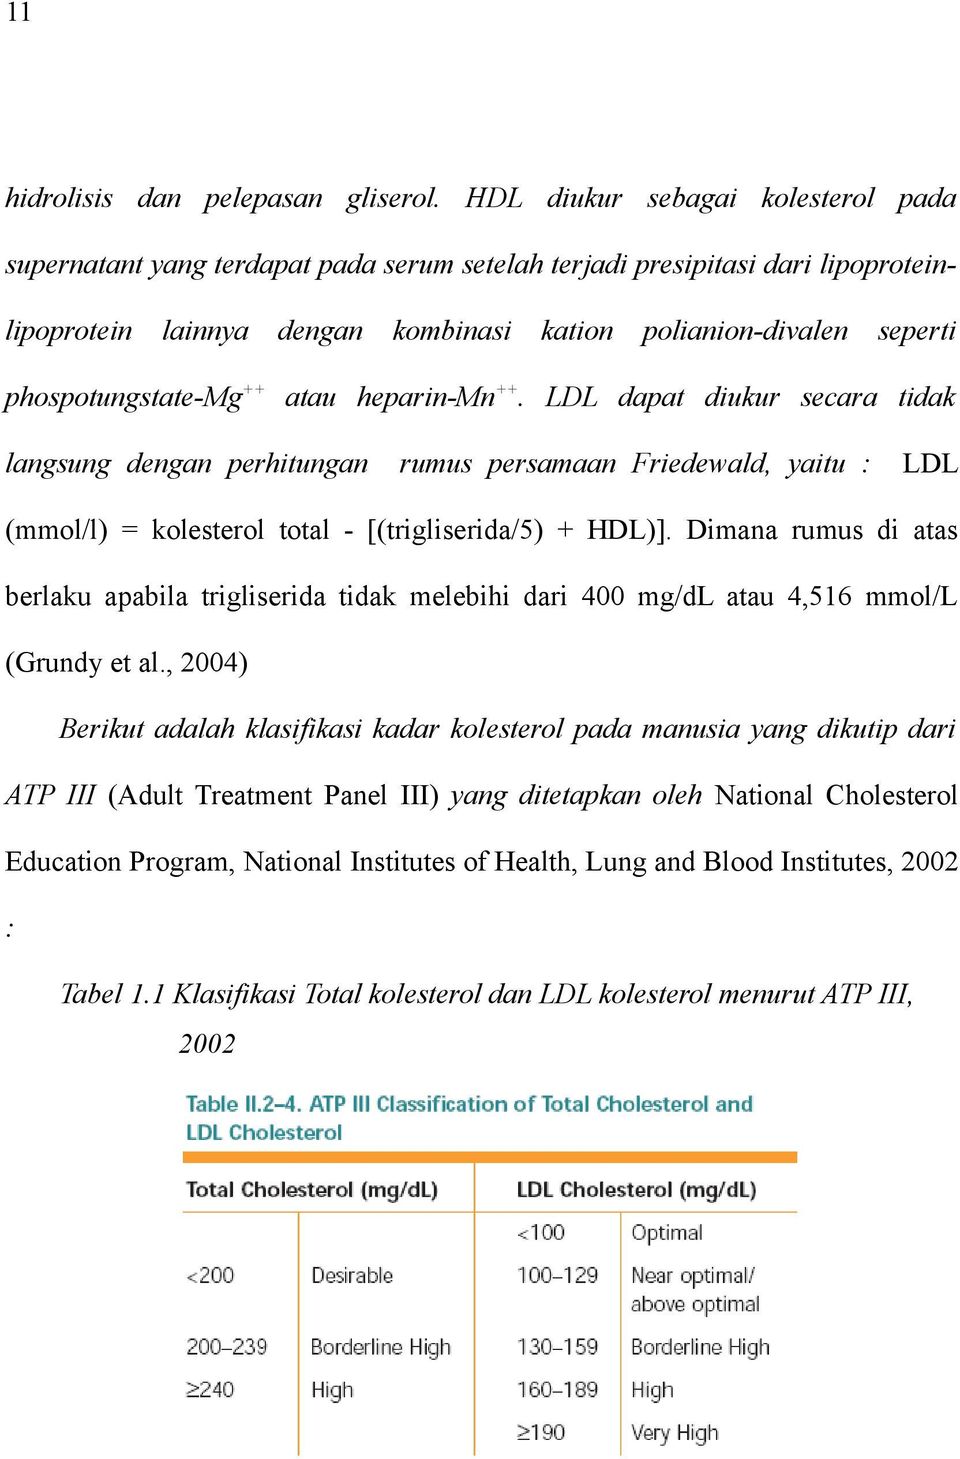 phospotungstate-mg ++ atau heparin-mn ++. LDL dapat diukur secara tidak langsung dengan perhitungan rumus persamaan Friedewald, yaitu : LDL (mmol/l) = kolesterol total - [(trigliserida/5) + HDL)].